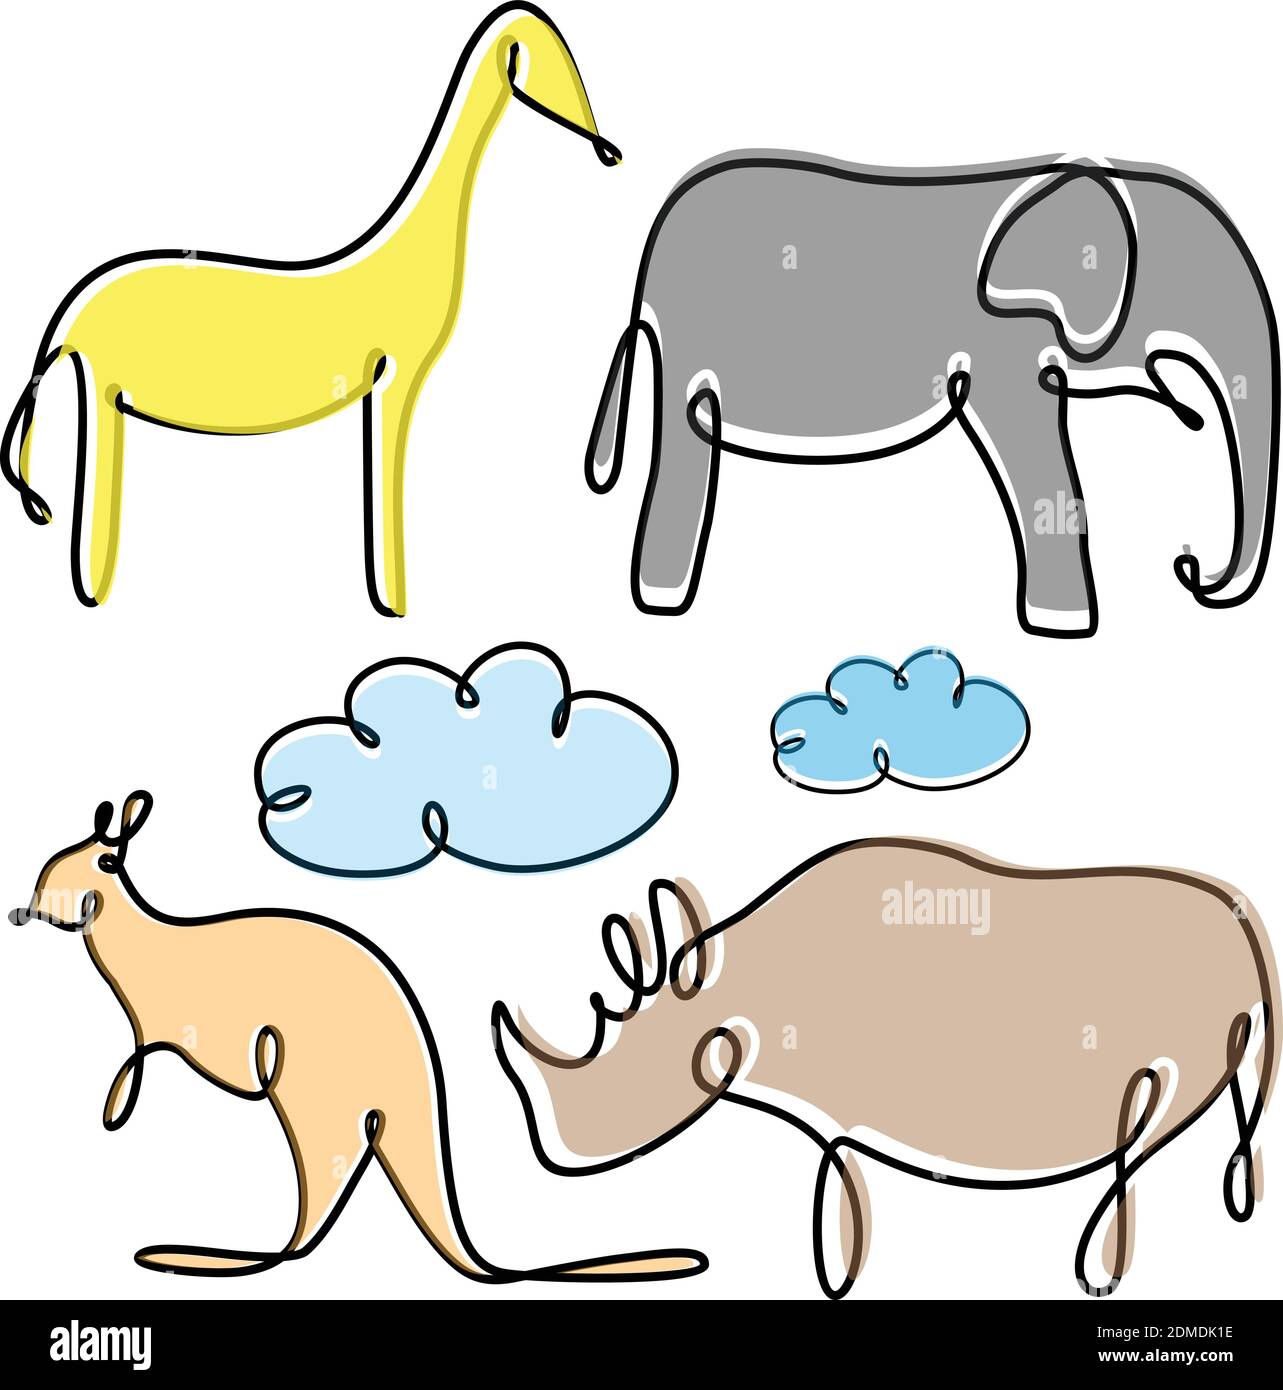 Beste kreative bunte Illustration Set Tier Konzept Design. Einfache Tierwelt. Vektorgrafik EPS.8 EPS.10 Stock Vektor